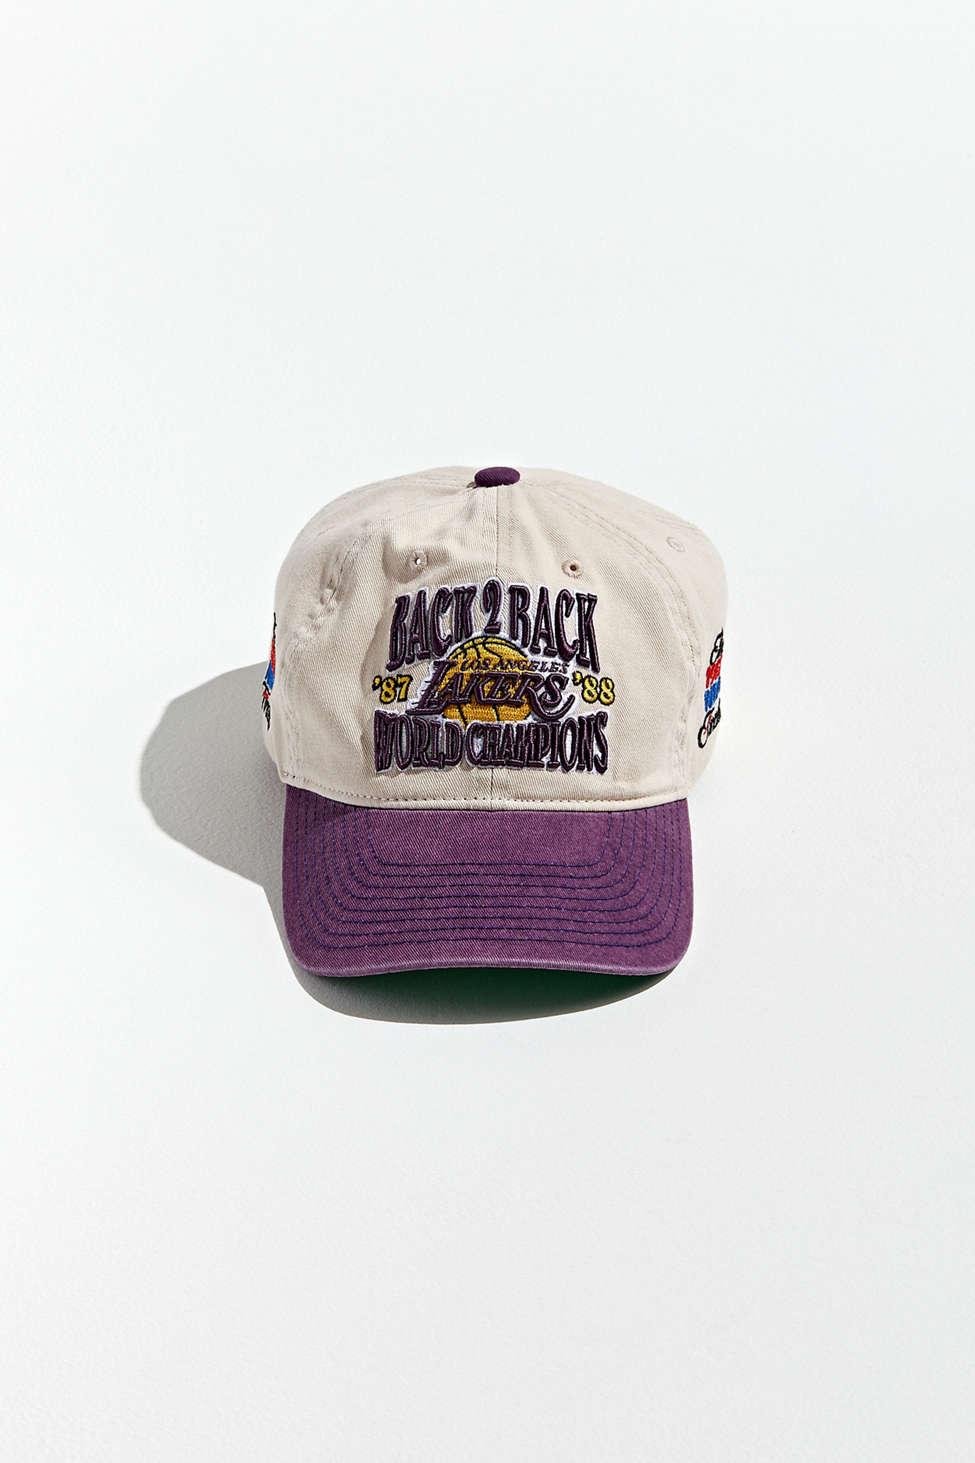 MITCHELL & NESS: NBA BACK 2 BACK CHAMPIONSHIP HAT